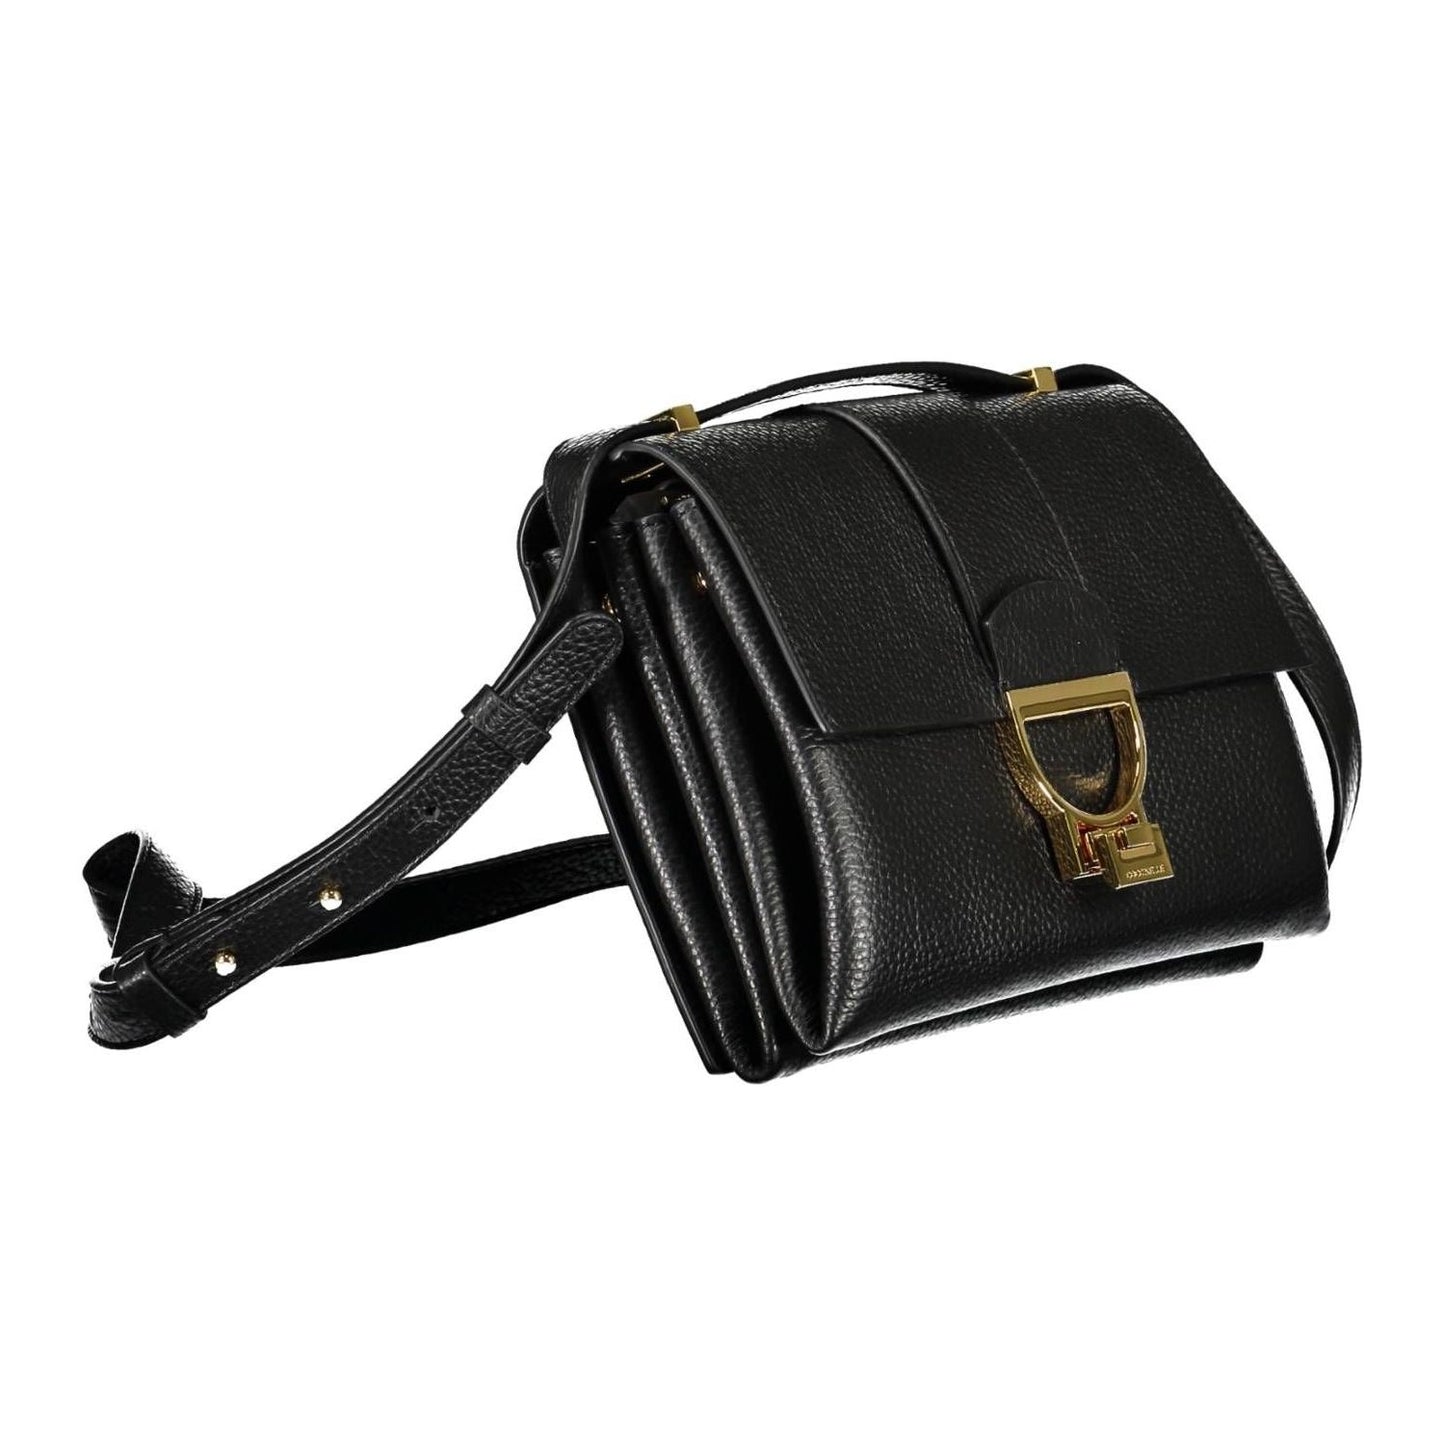 Coccinelle Chic Black Leather Shoulder Bag chic-black-leather-shoulder-bag